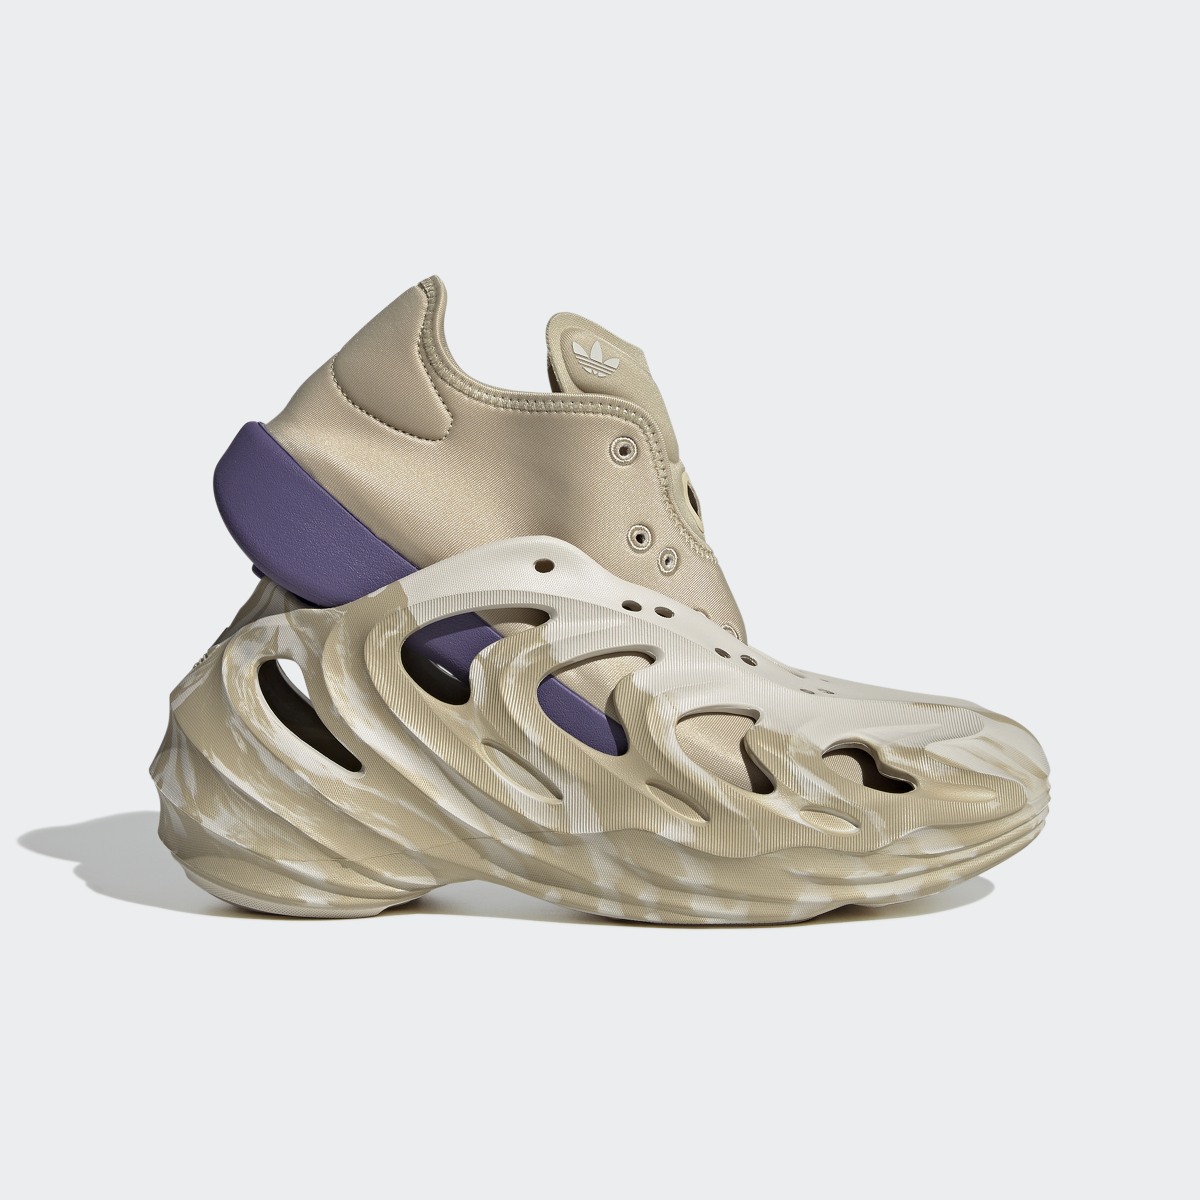 Adidas Adifom Q Shoes. 10